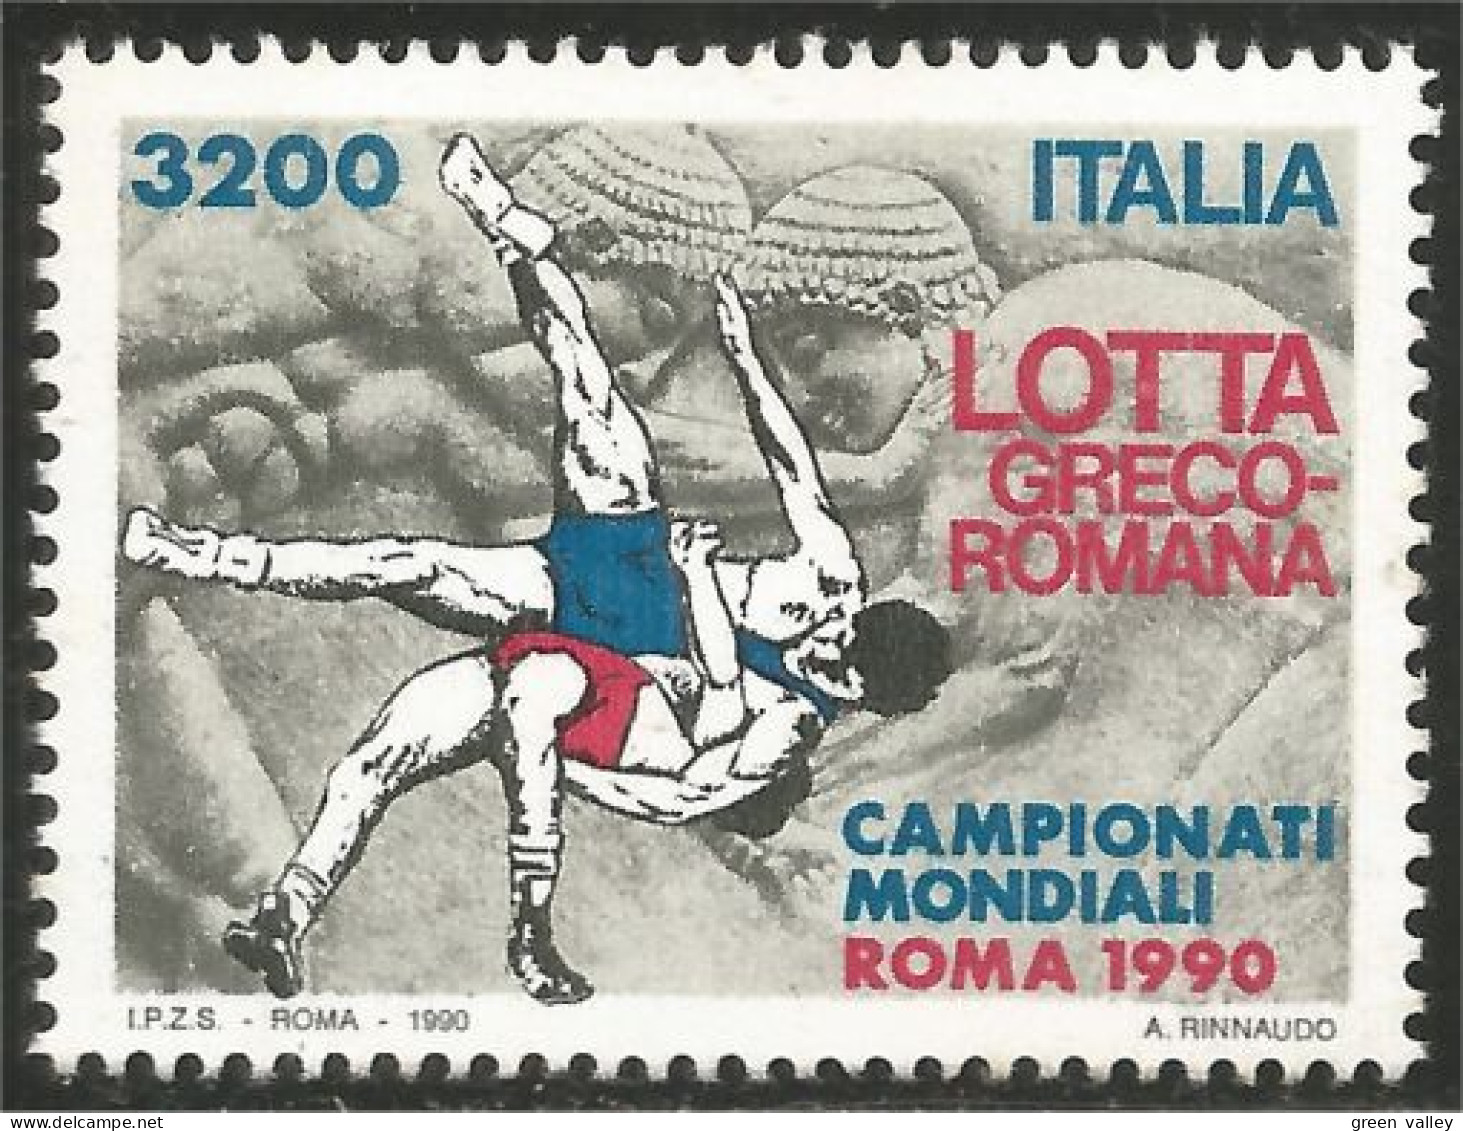 520 Italy Lutte Lotta Wrestling MNH ** Neuf SC (ITA-298) - Ringen